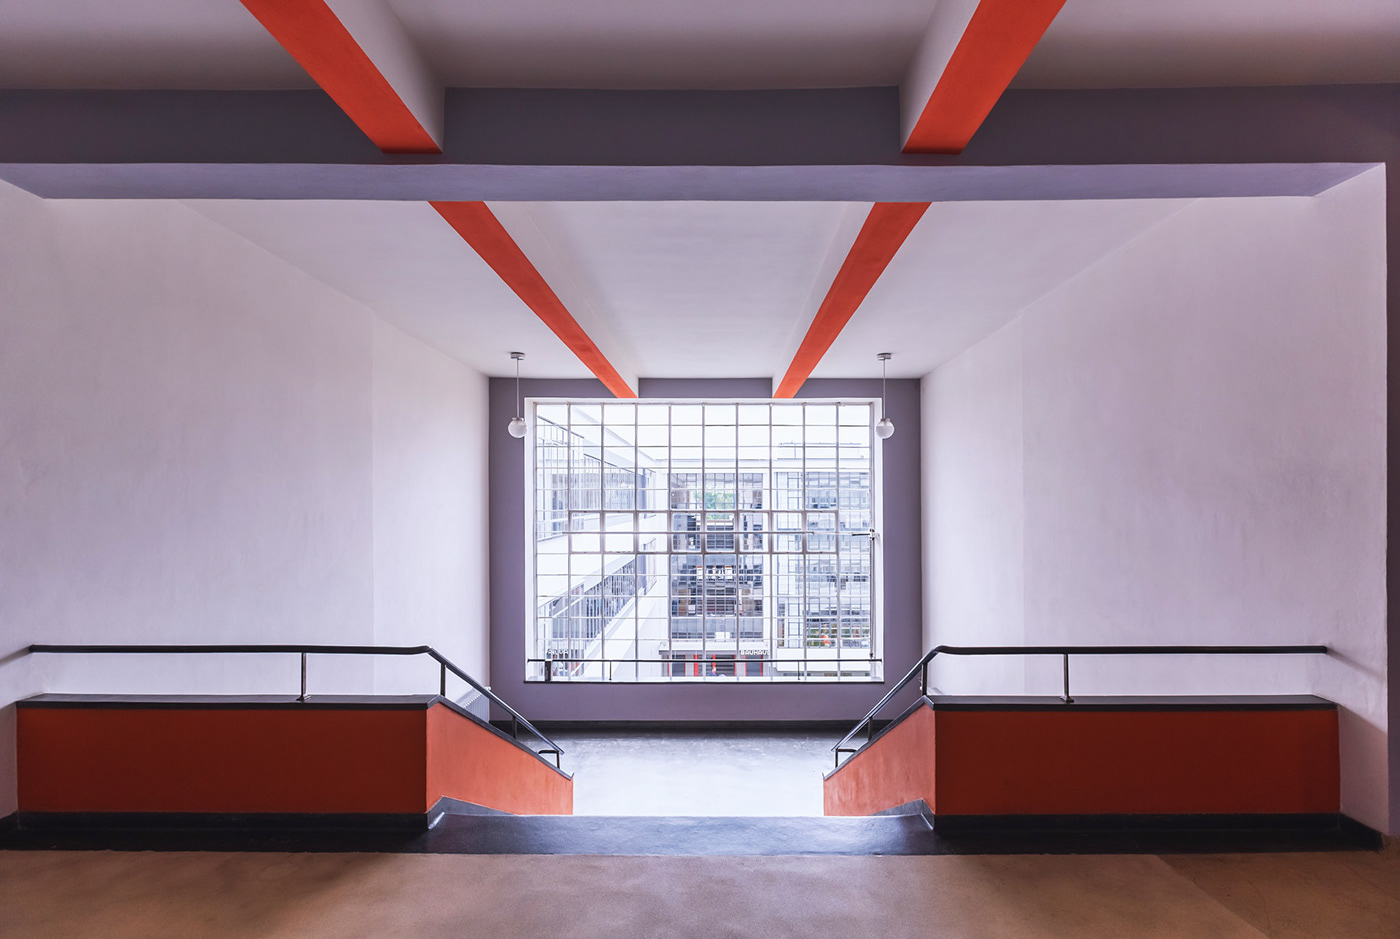 architektur bauhaus Bauhaus Dessau klar minimalismus minimalistisch